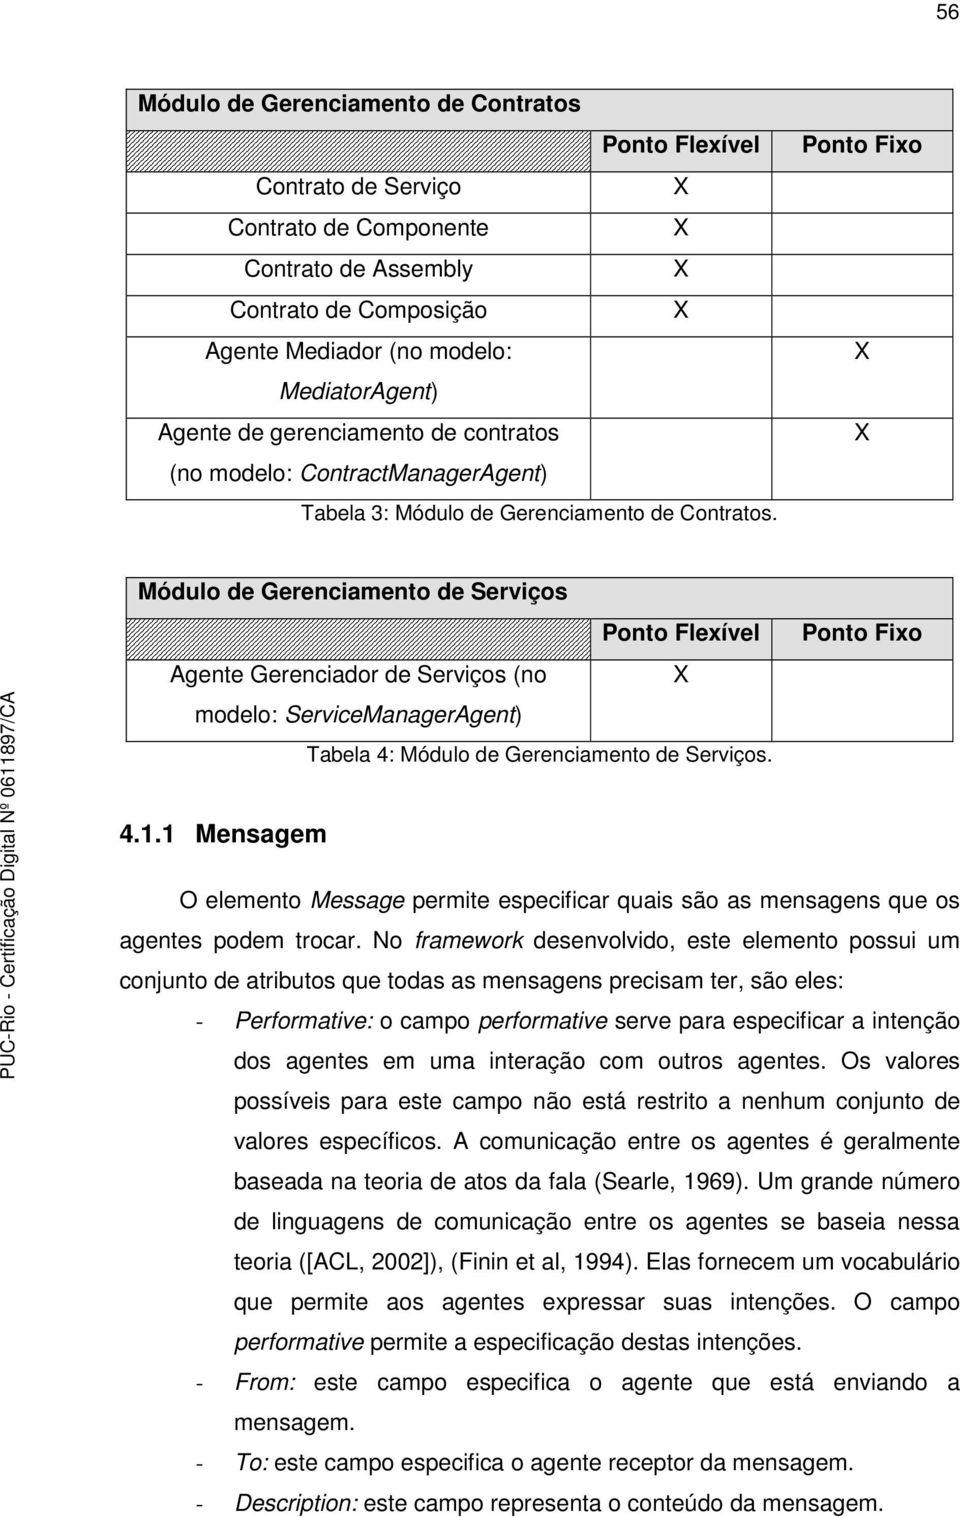 Ponto Fixo Módulo de Gerenciamento de Serviços Ponto Flexível Agente Gerenciador de Serviços (no modelo: ServiceManagerAgent) Tabela 4: Módulo de Gerenciamento de Serviços. Ponto Fixo 4.1.